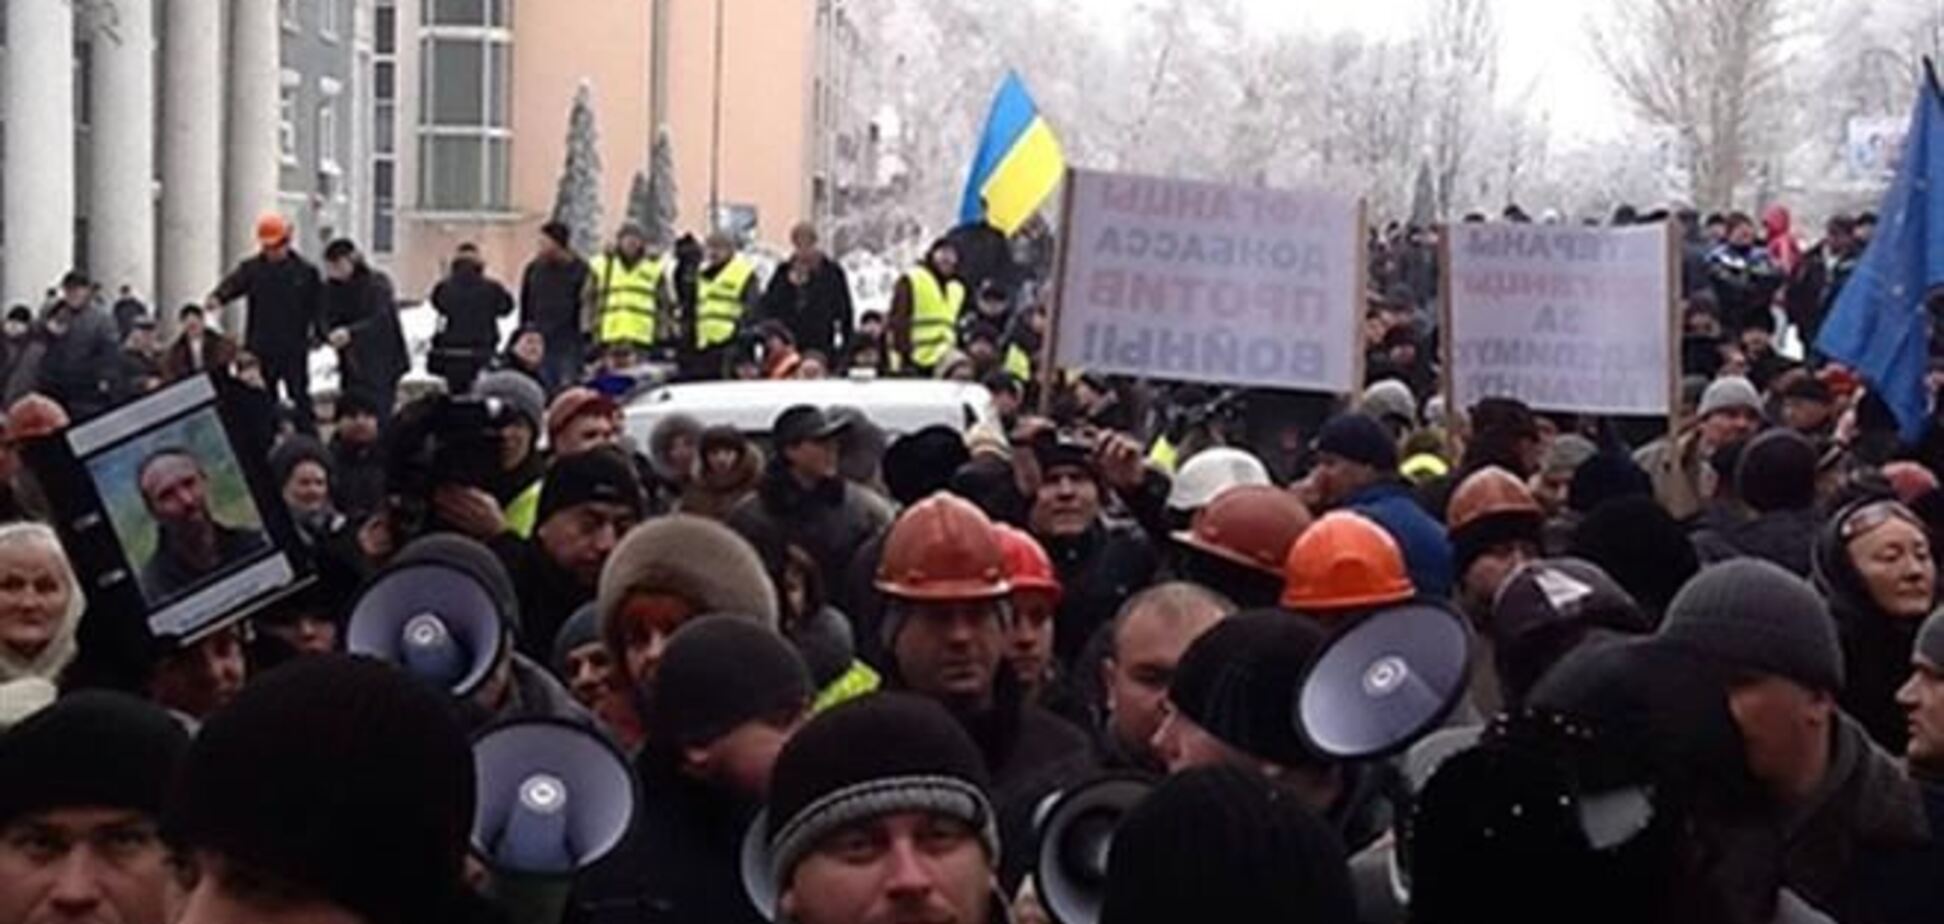 Антимайдановцы хотели сорвать встречу нардепов с жителями Донецка - 'Батьківщина'